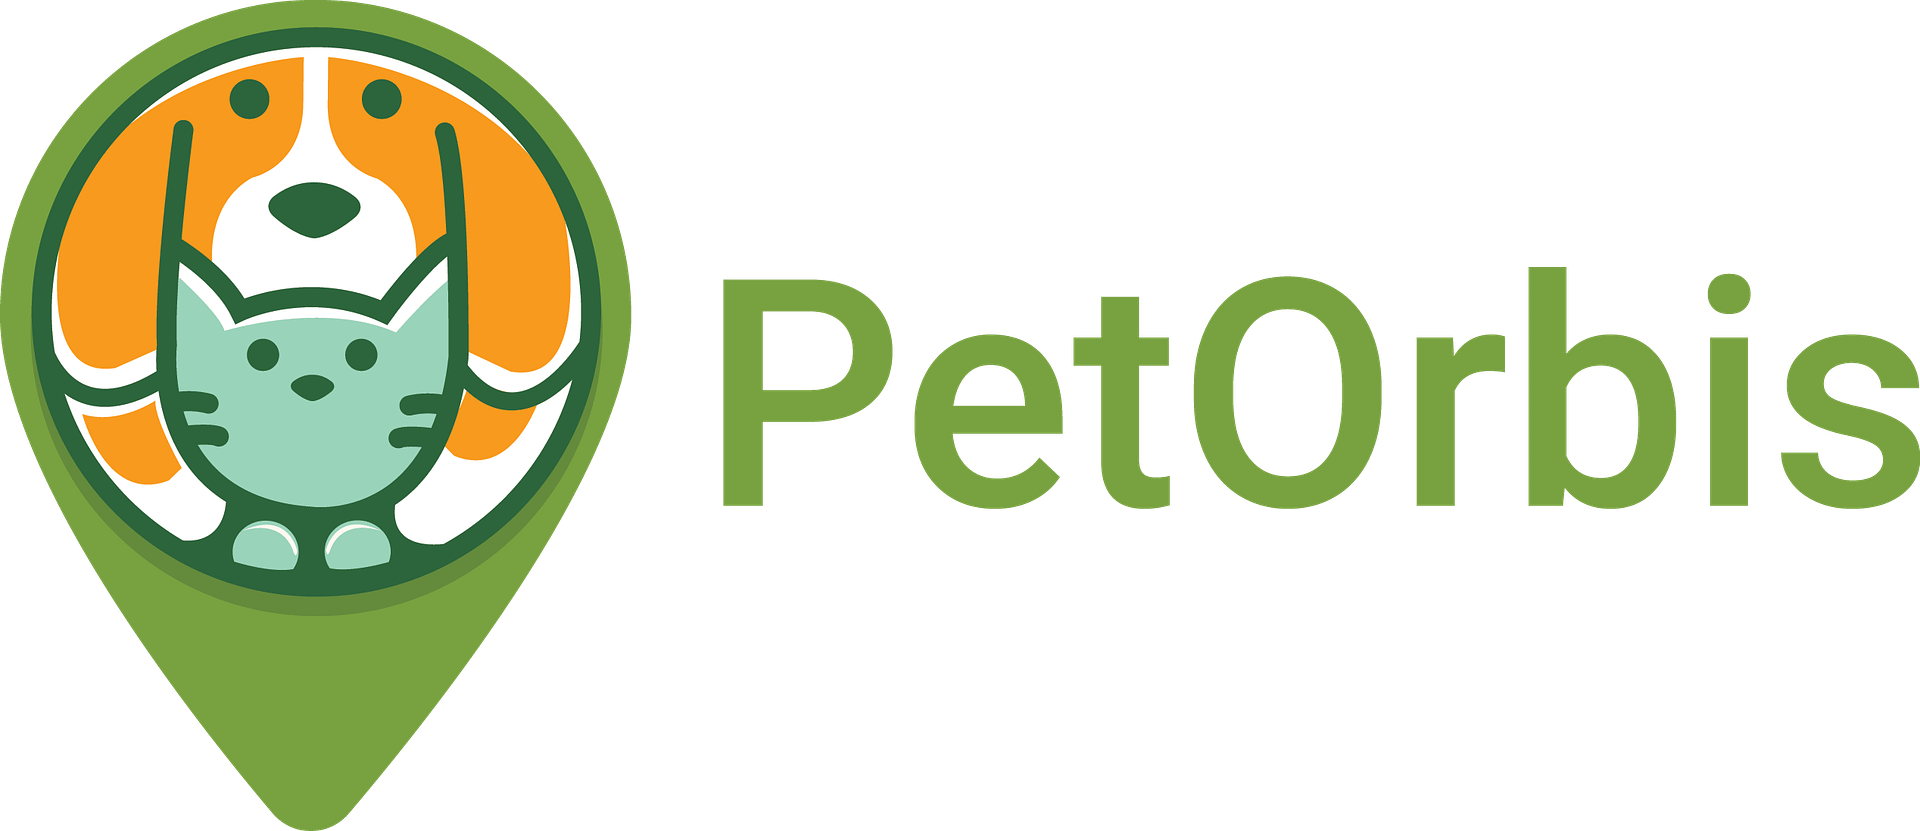 PetOrbis.com